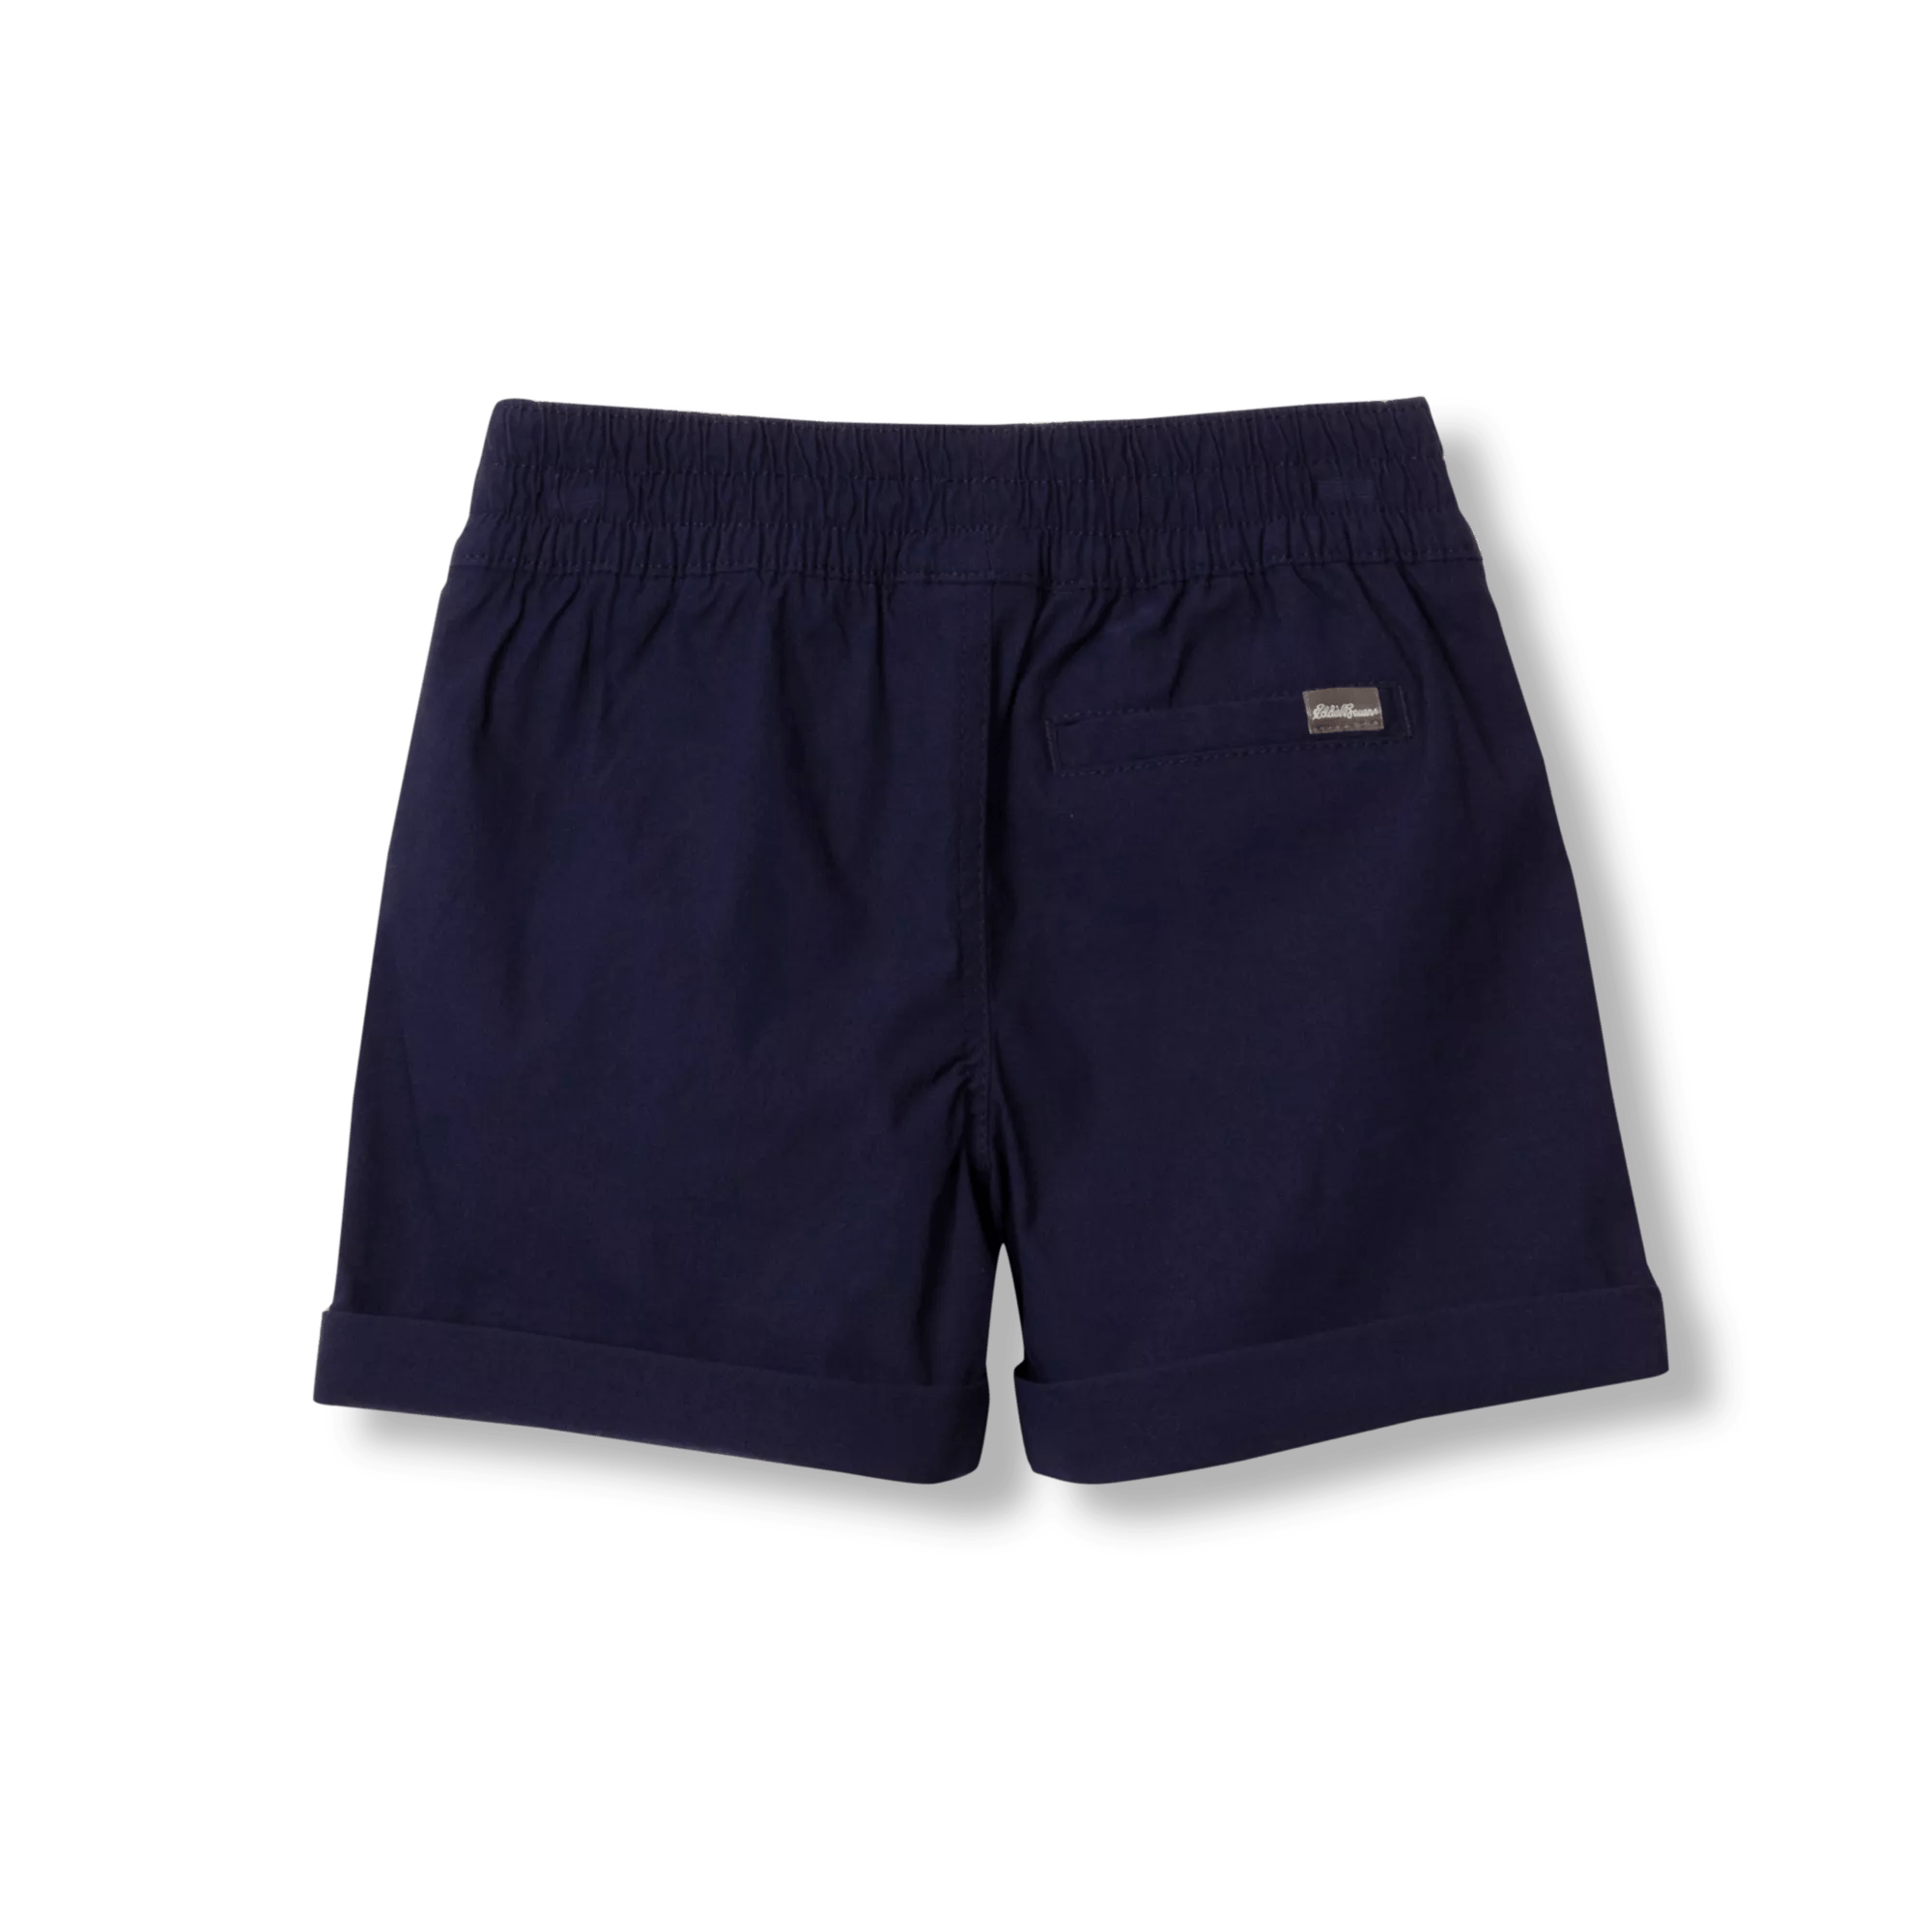 Adventurer Shorts